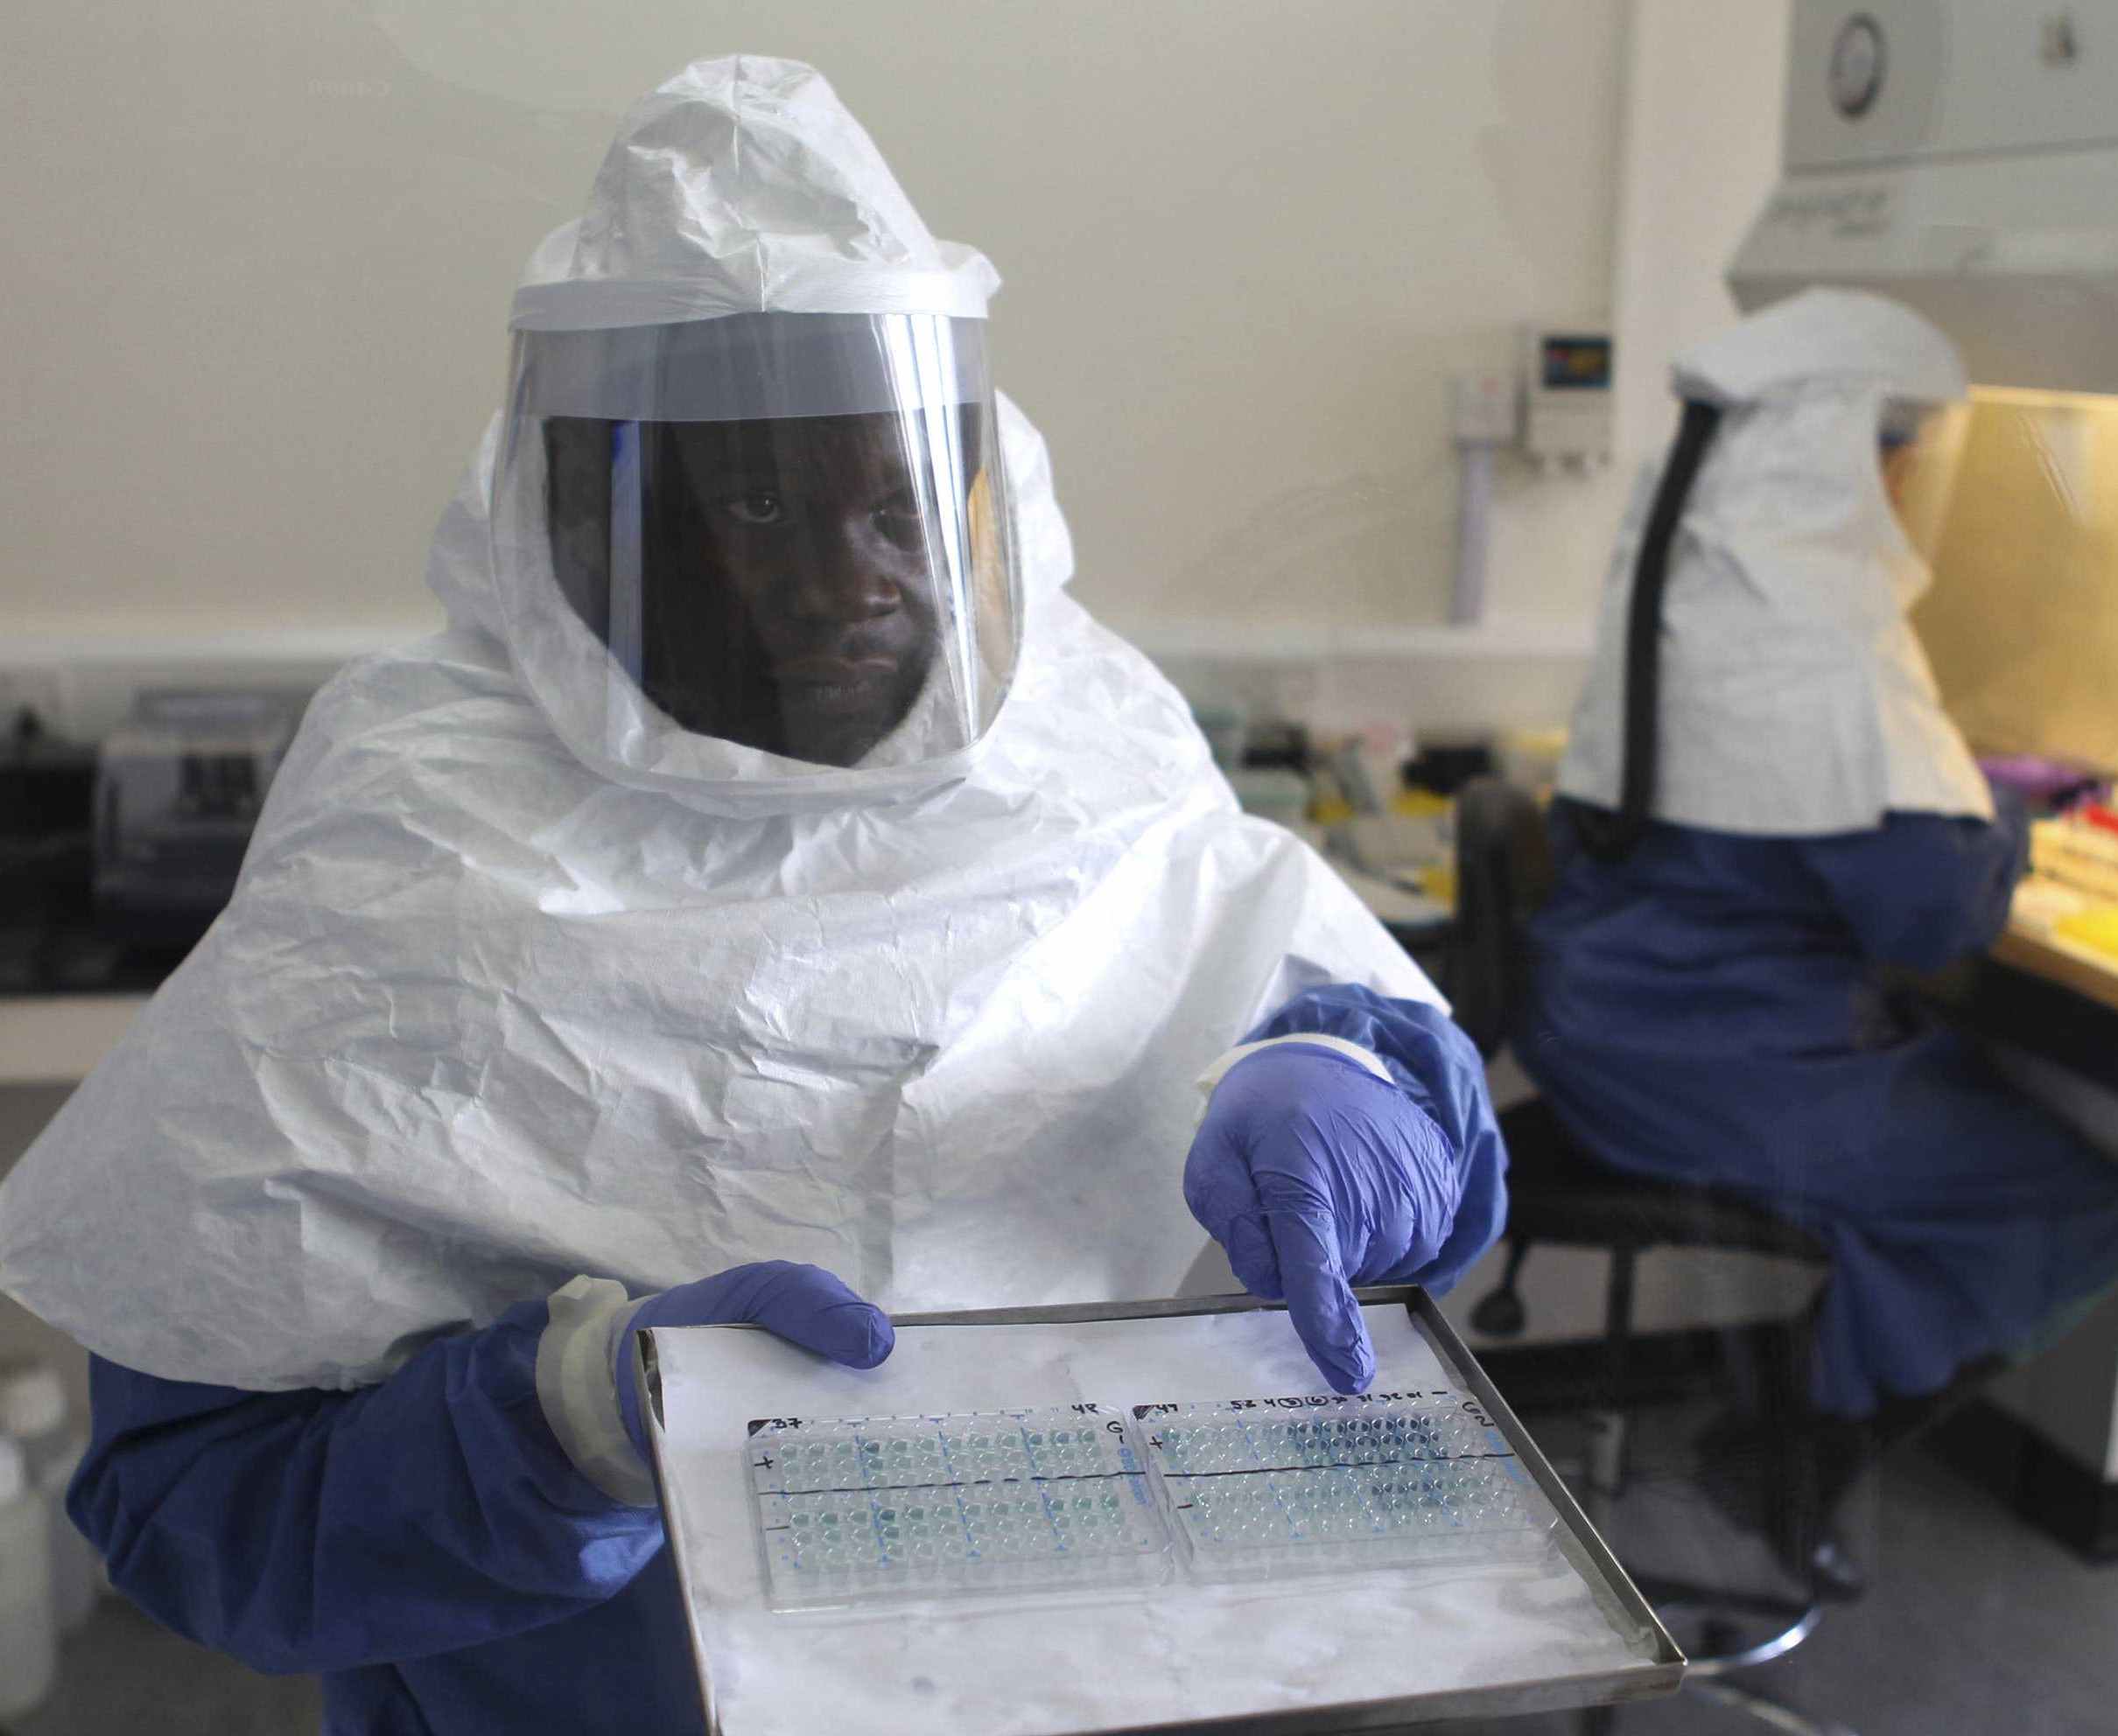 Ebola, emergenza sanitaria mondiale. Meloni e Rampelli dei Fratelli d'Italia chiedono maggiori controlli per eviatre contagio si espanda in Italia